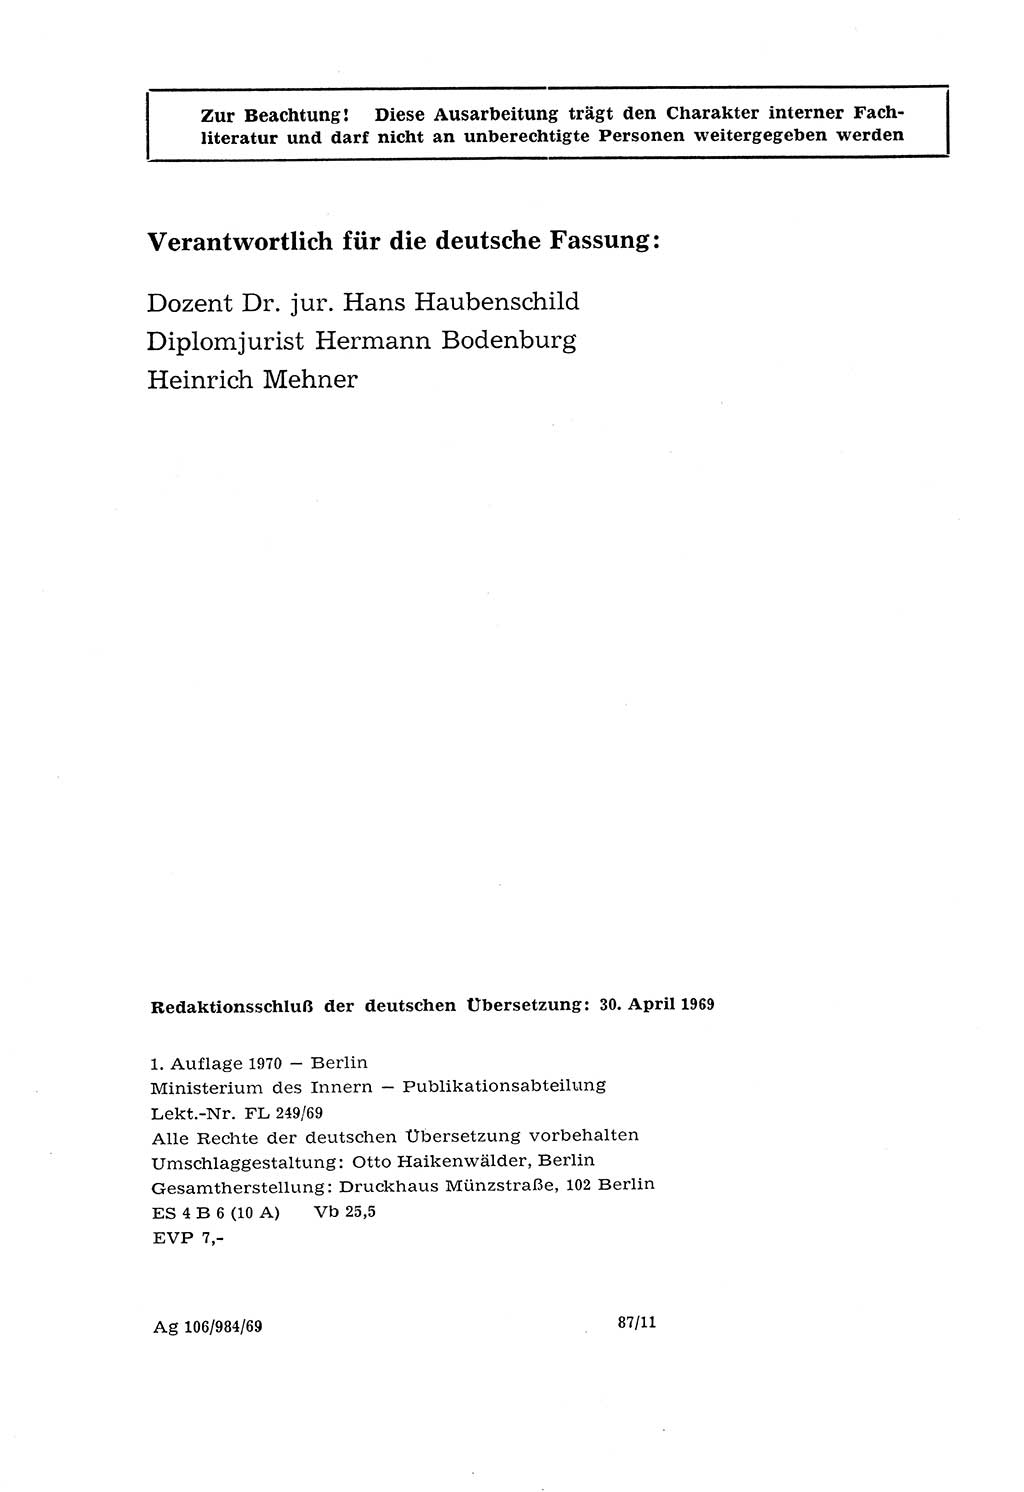 Lehrbuch der Strafvollzugspädagogik [Deutsche Demokratische Republik (DDR)] 1969, Seite 4 (Lb. SV-Pd. DDR 1969, S. 4)